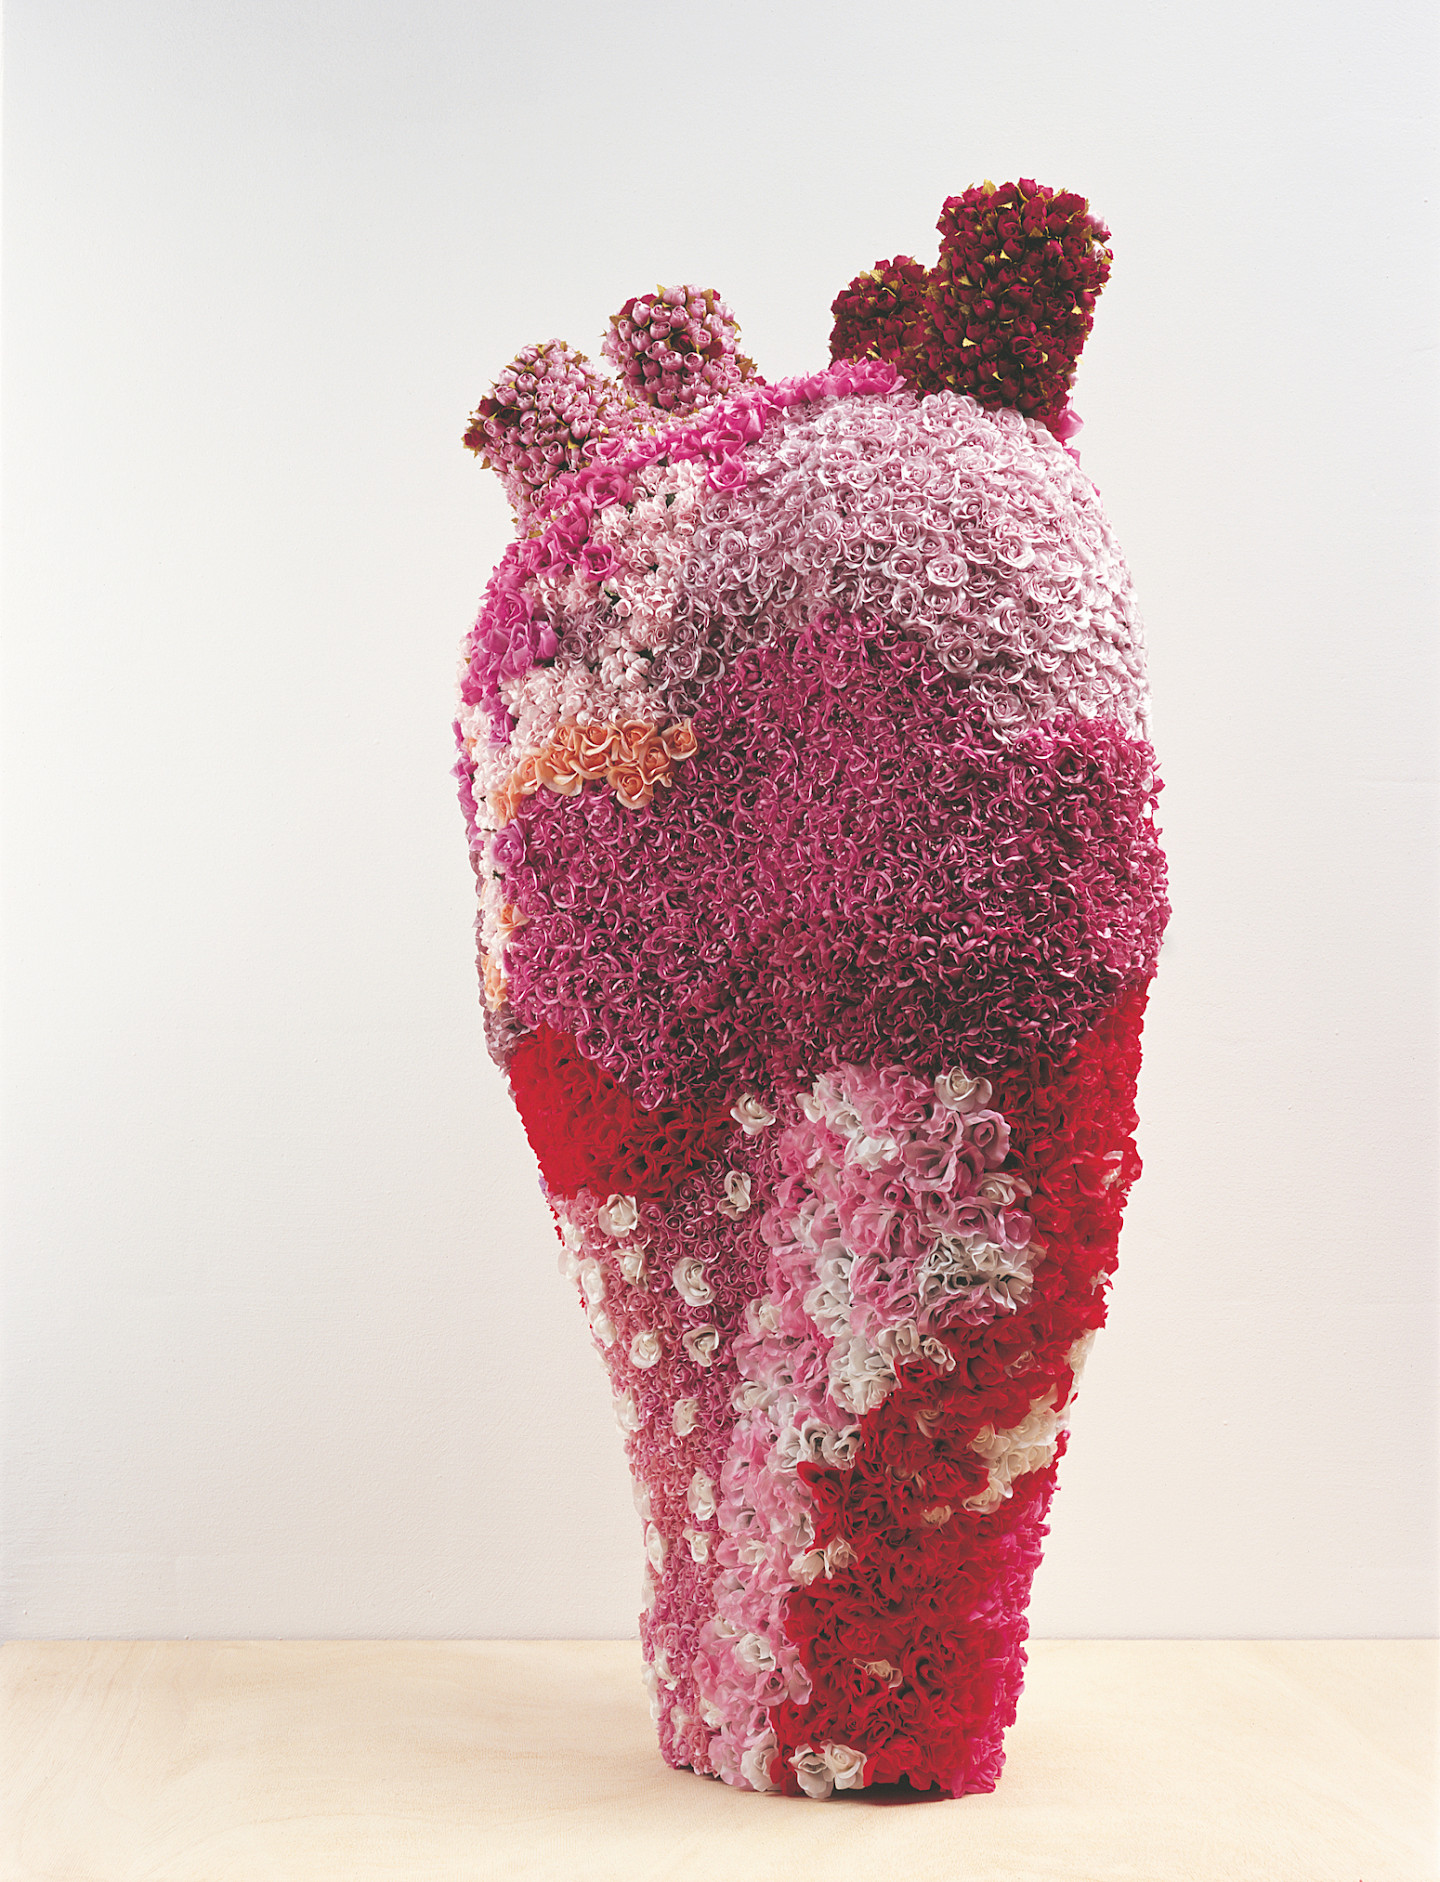 Michael von Brentano, Als wüsstest du alles, 2004, Seidenblumen auf Metallgerüst  140 x 64 x 48 cm